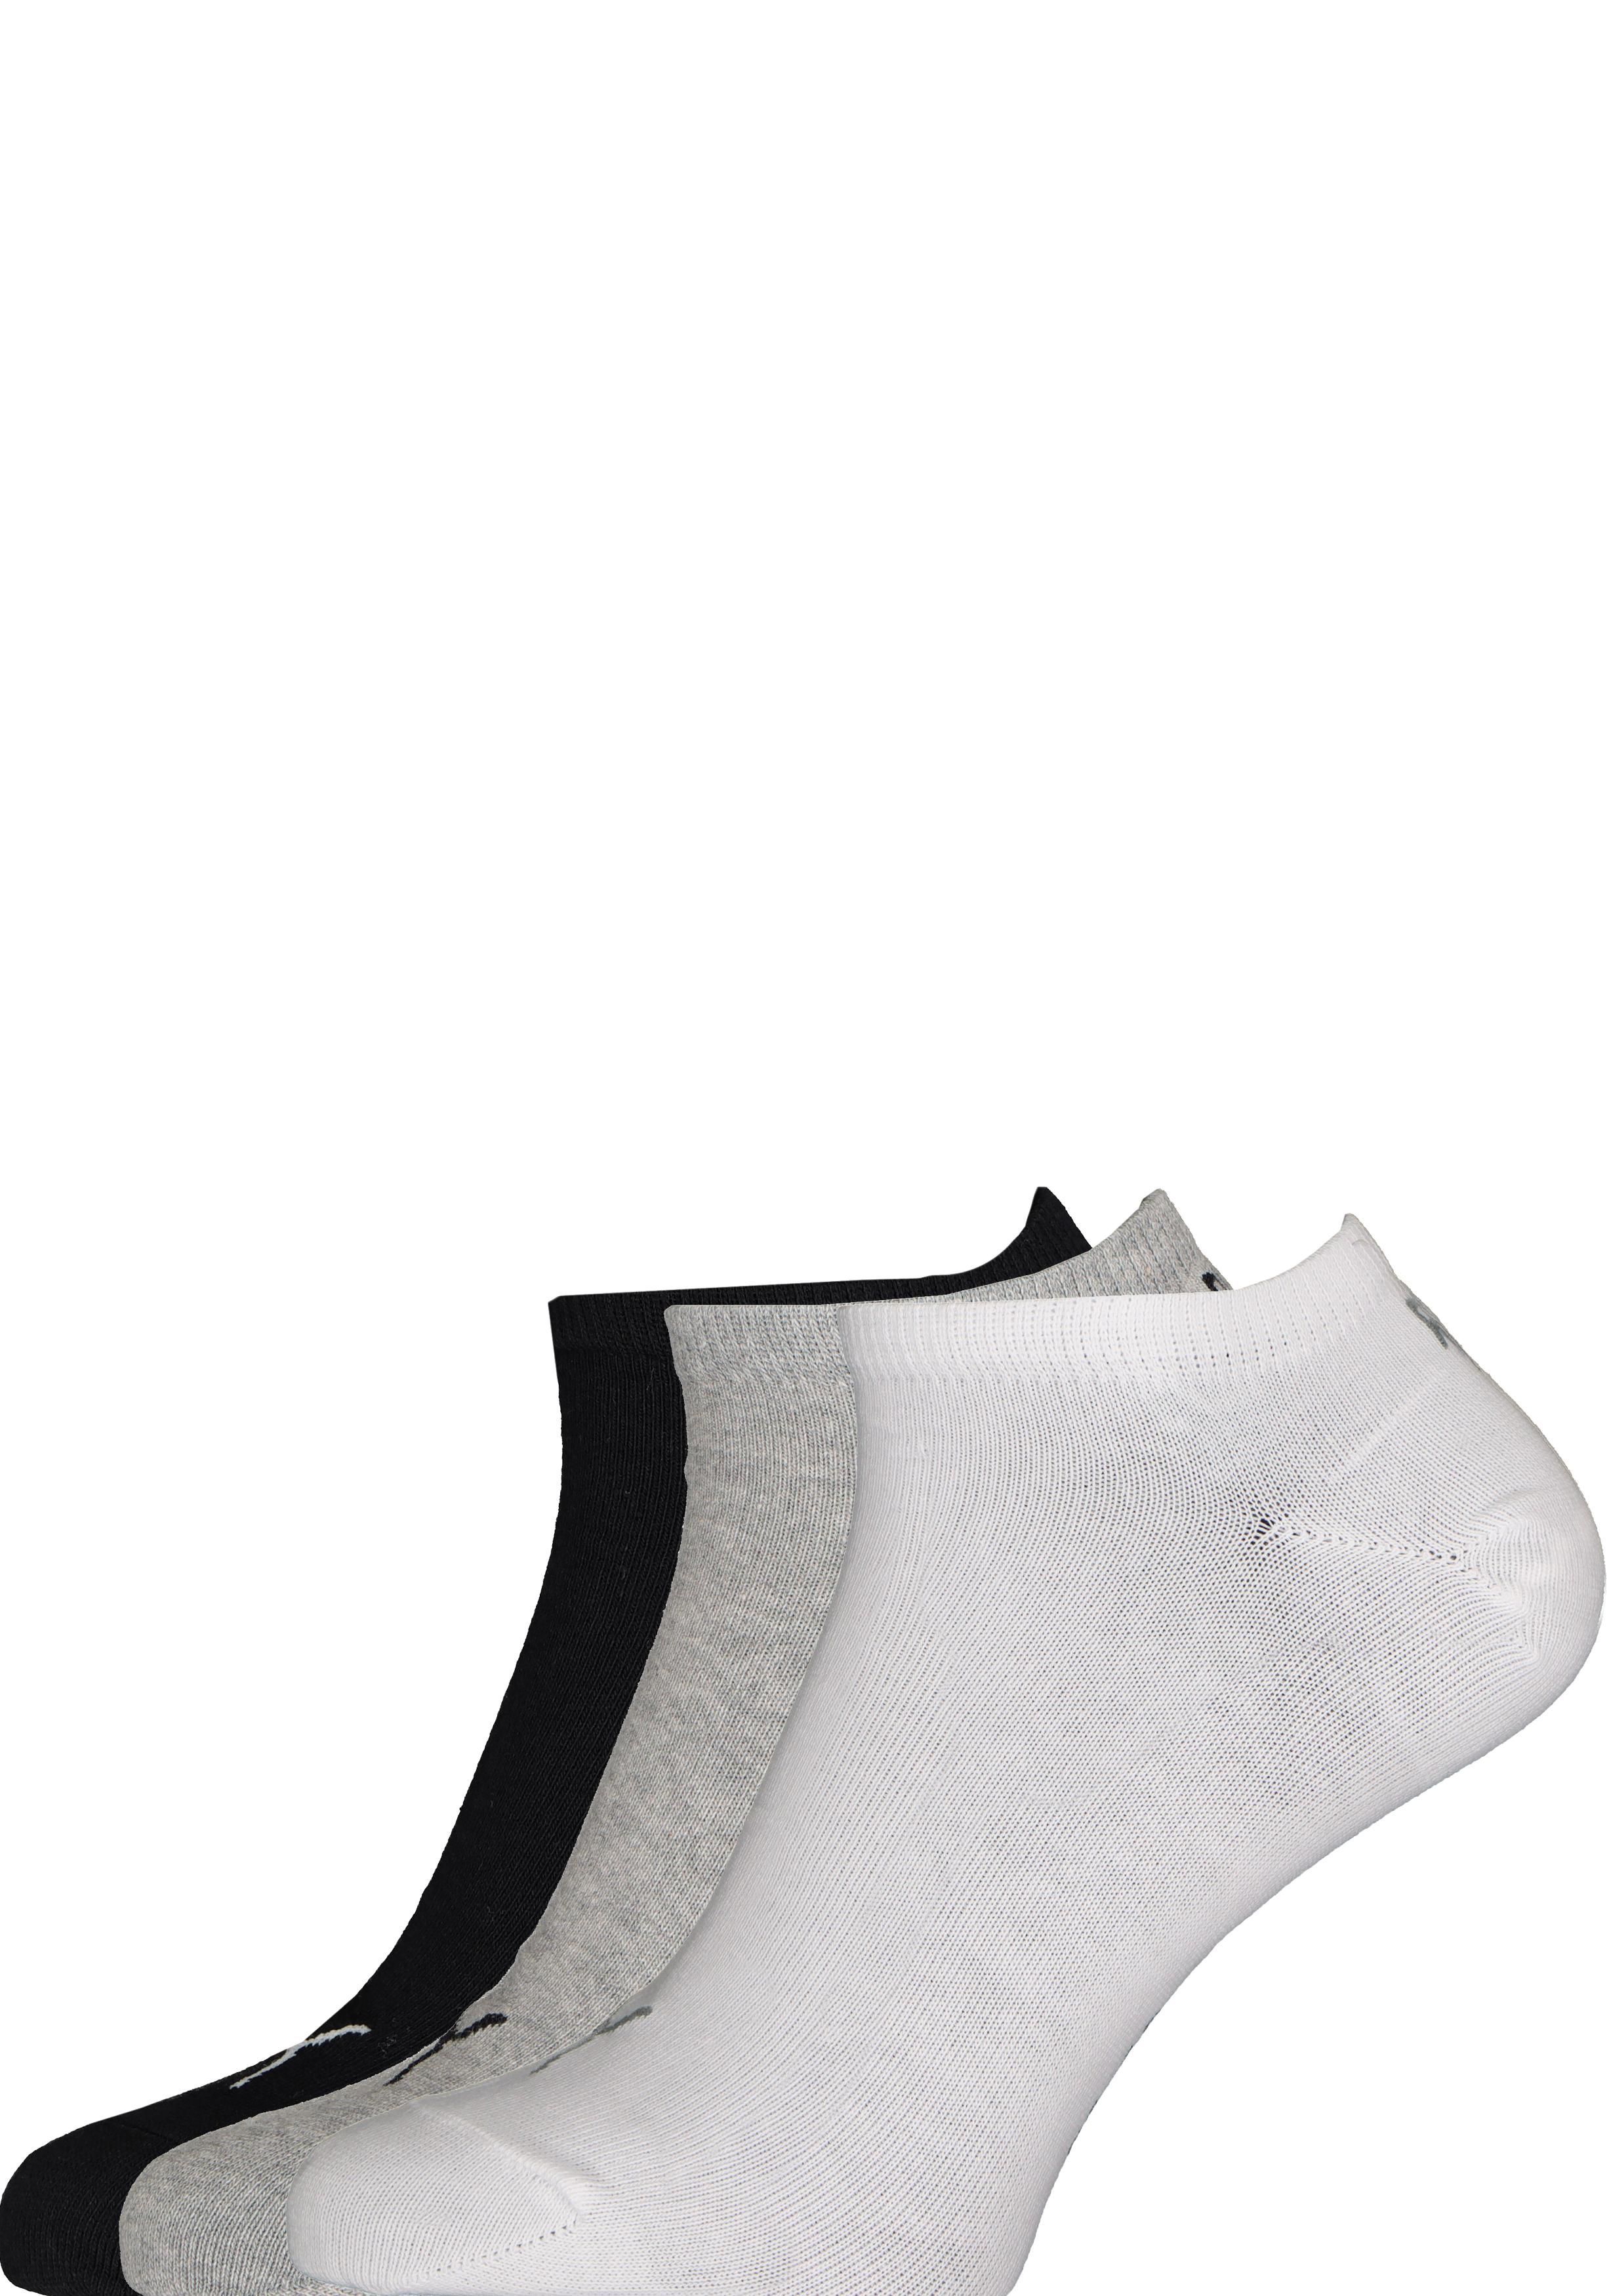 verkoopplan graan Piraat Puma unisex sneaker sokken (6-pack), wit, grijs en zwart - Zomer SALE tot  50% korting